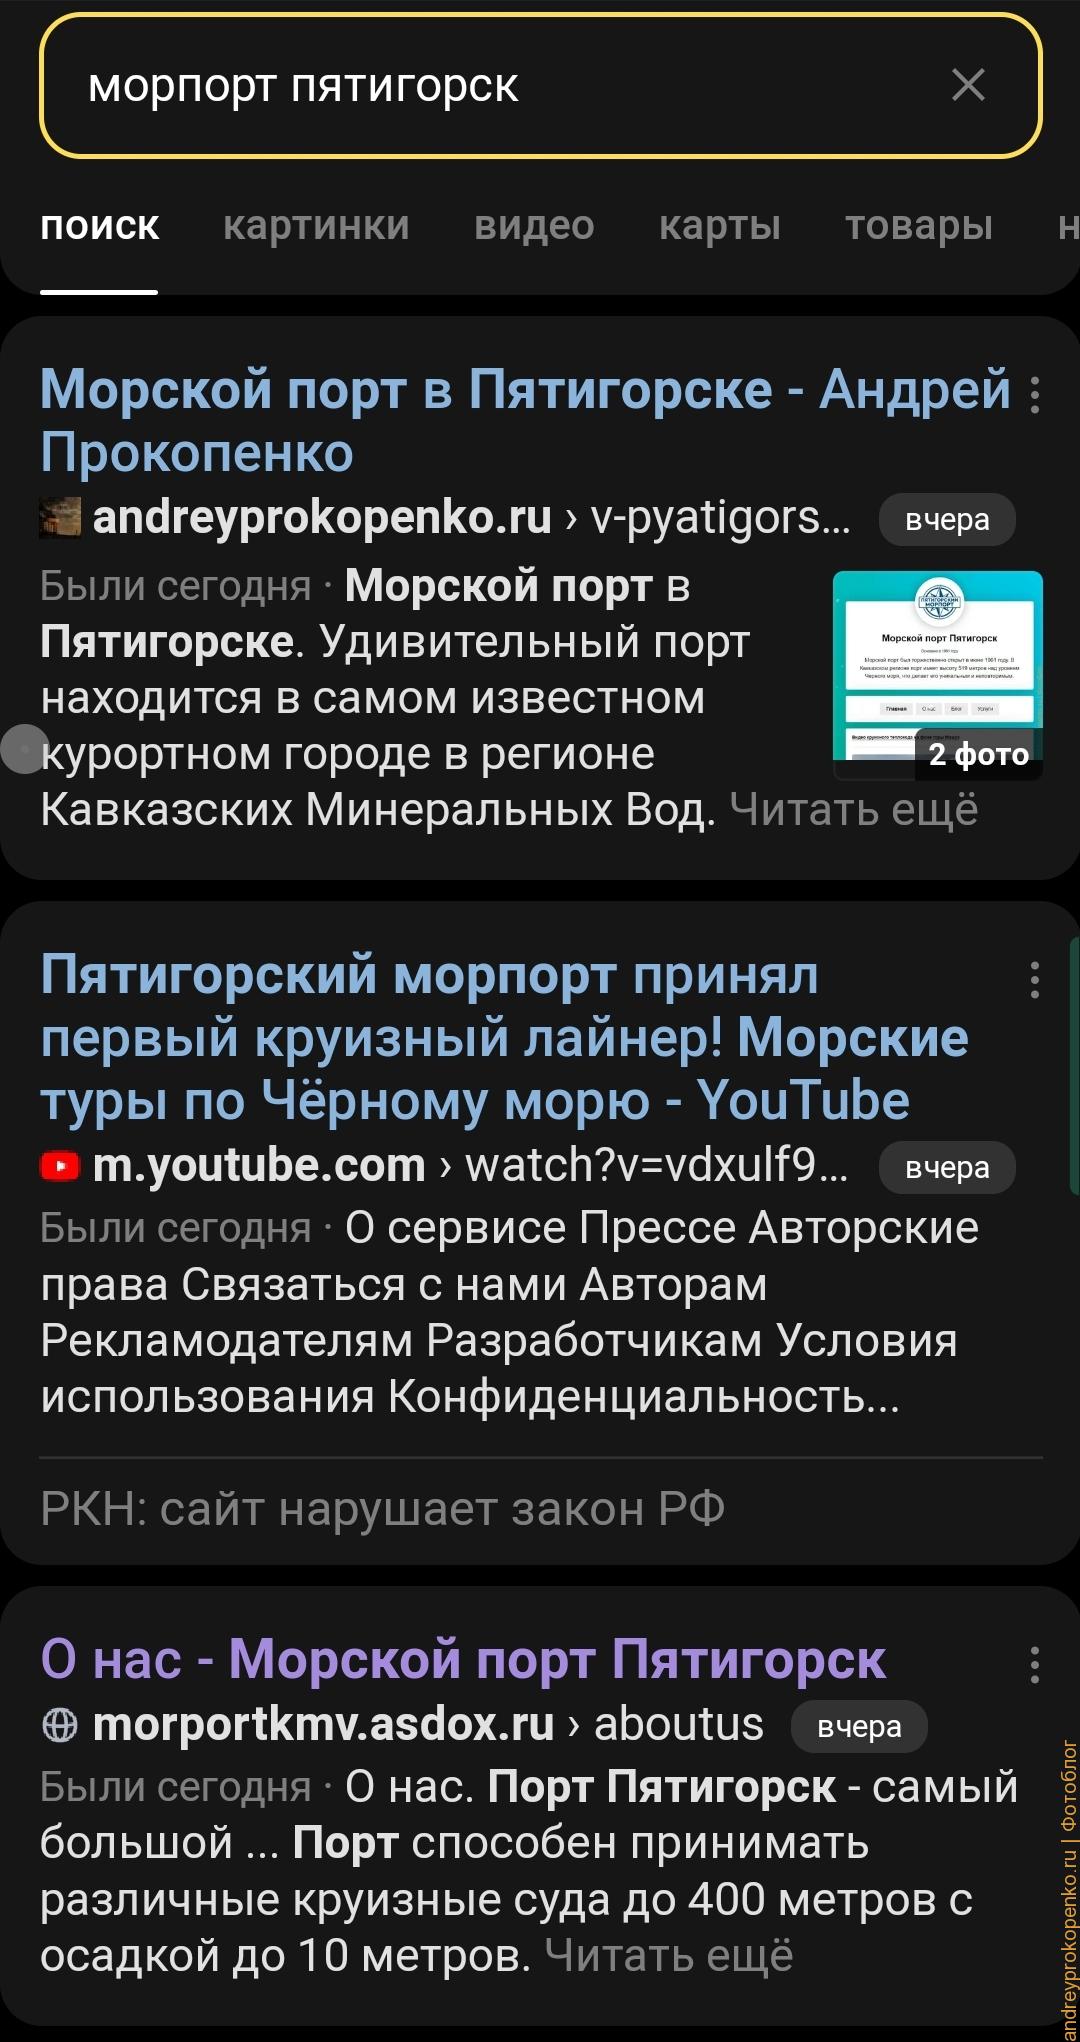 Запросы в Яндексе и Гугле